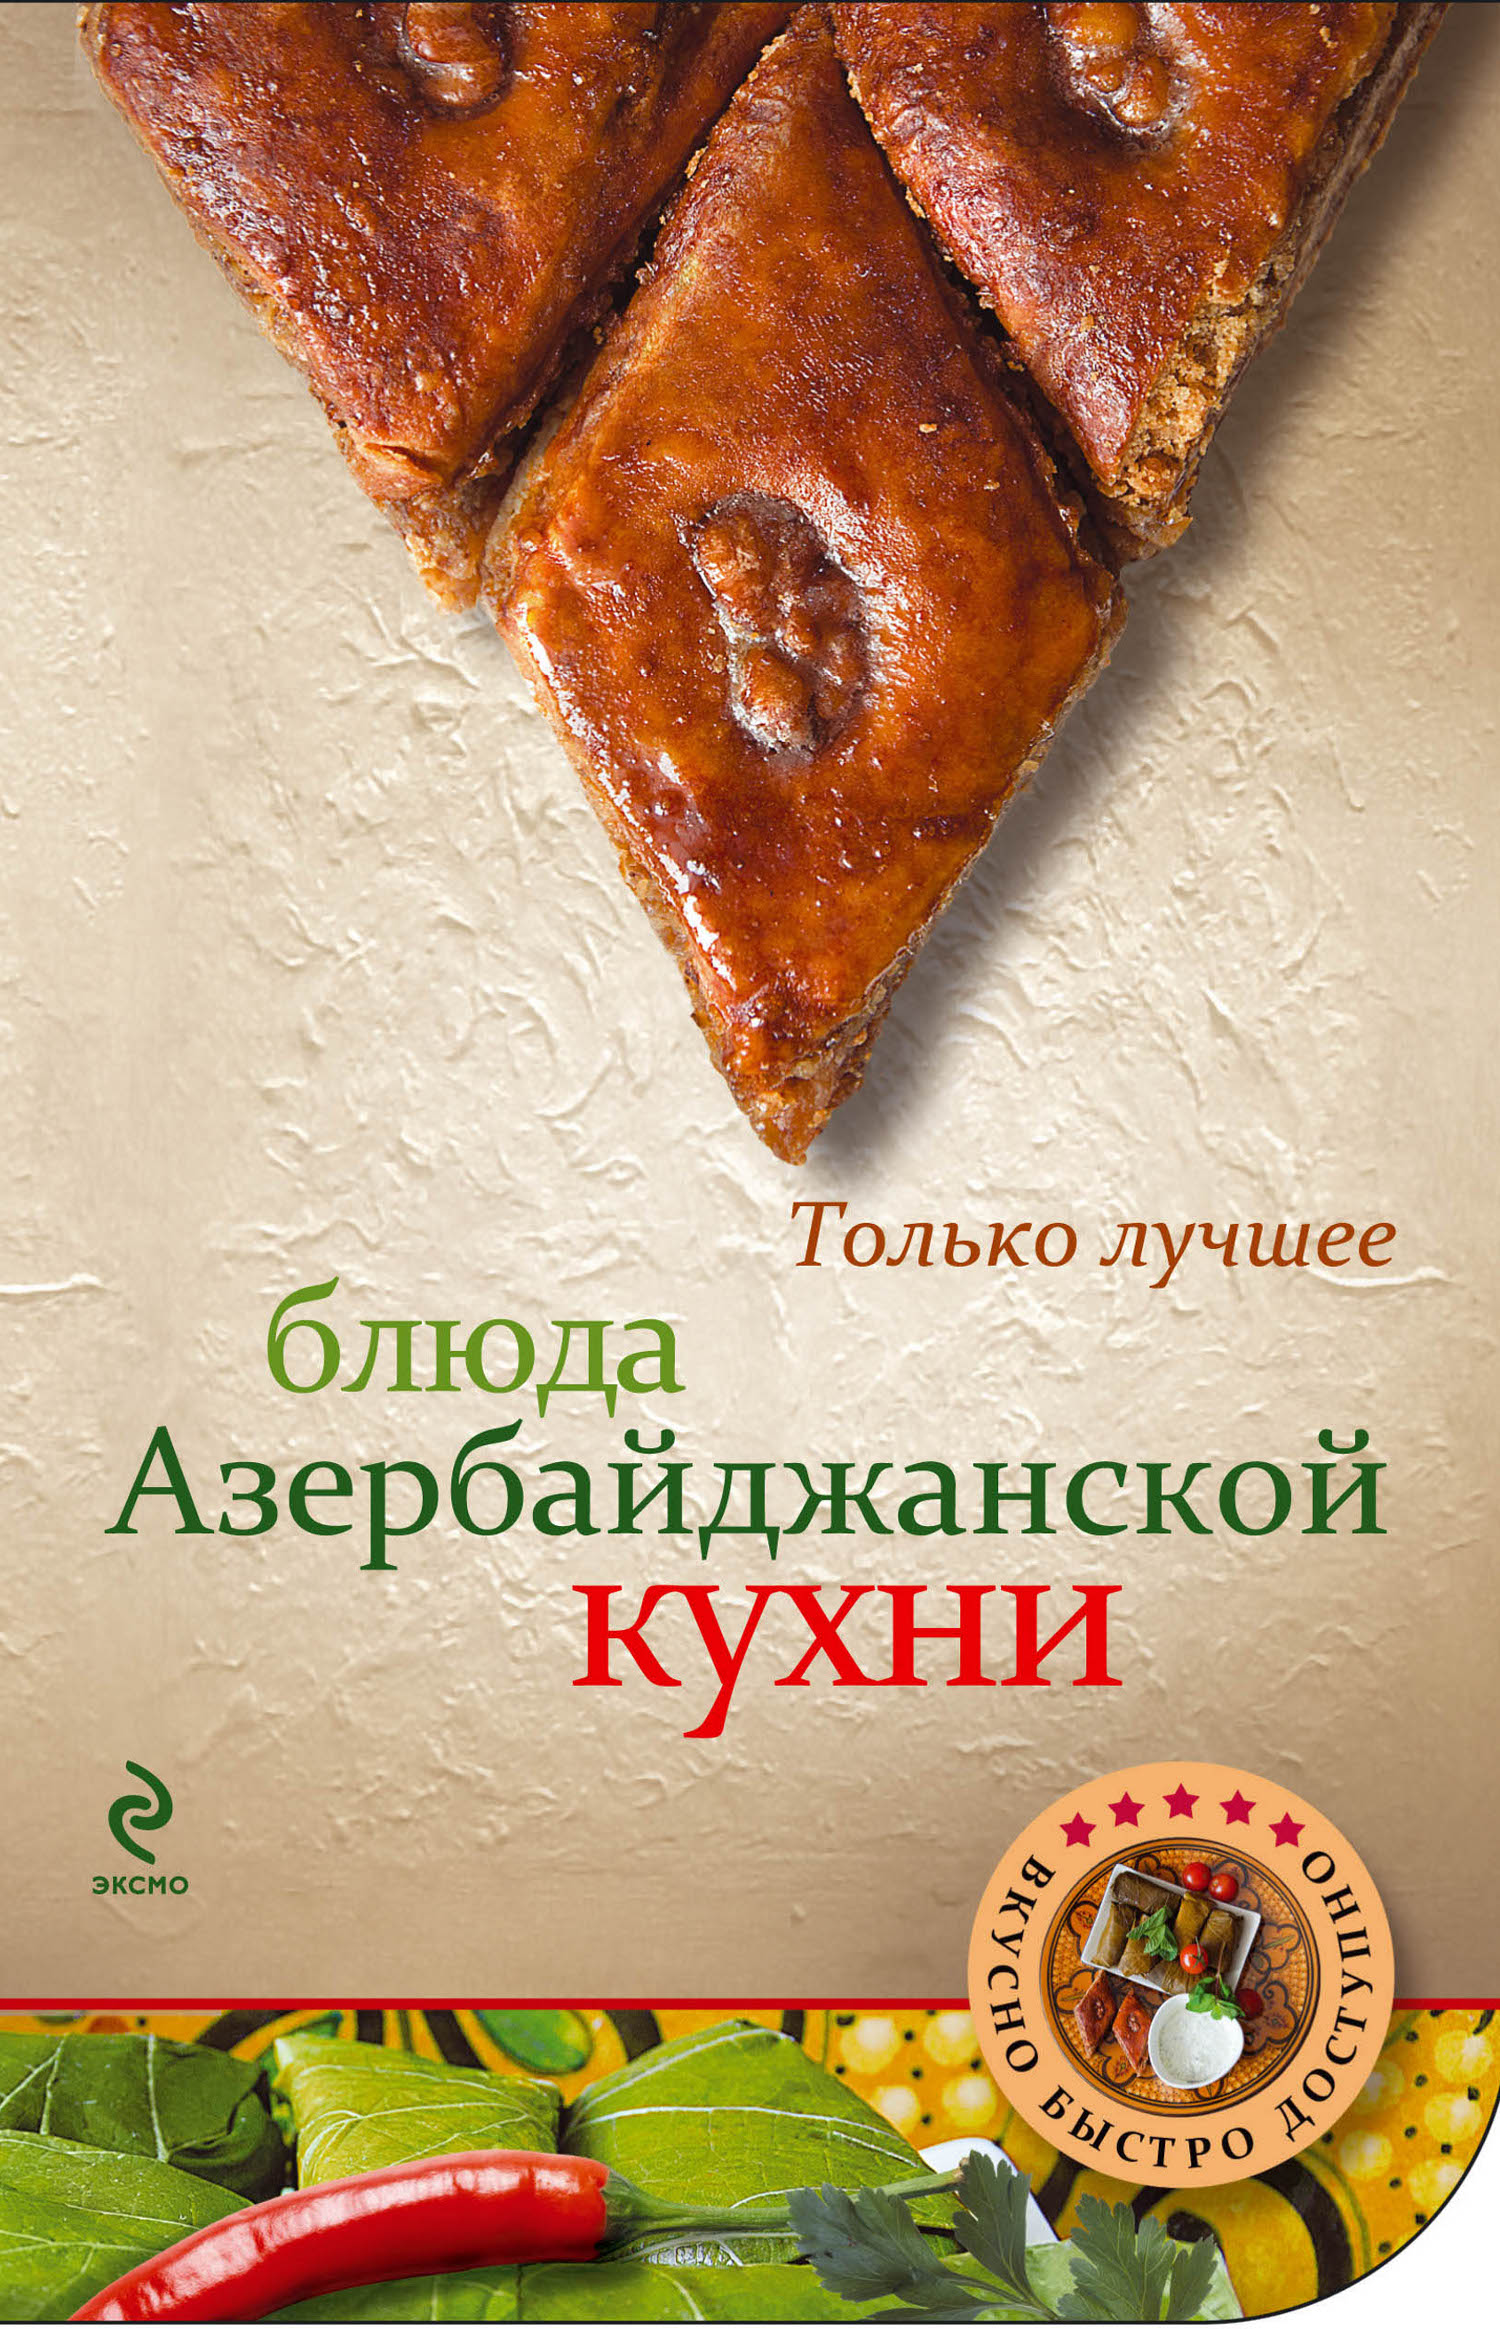 Блюда азербайджанской кухни